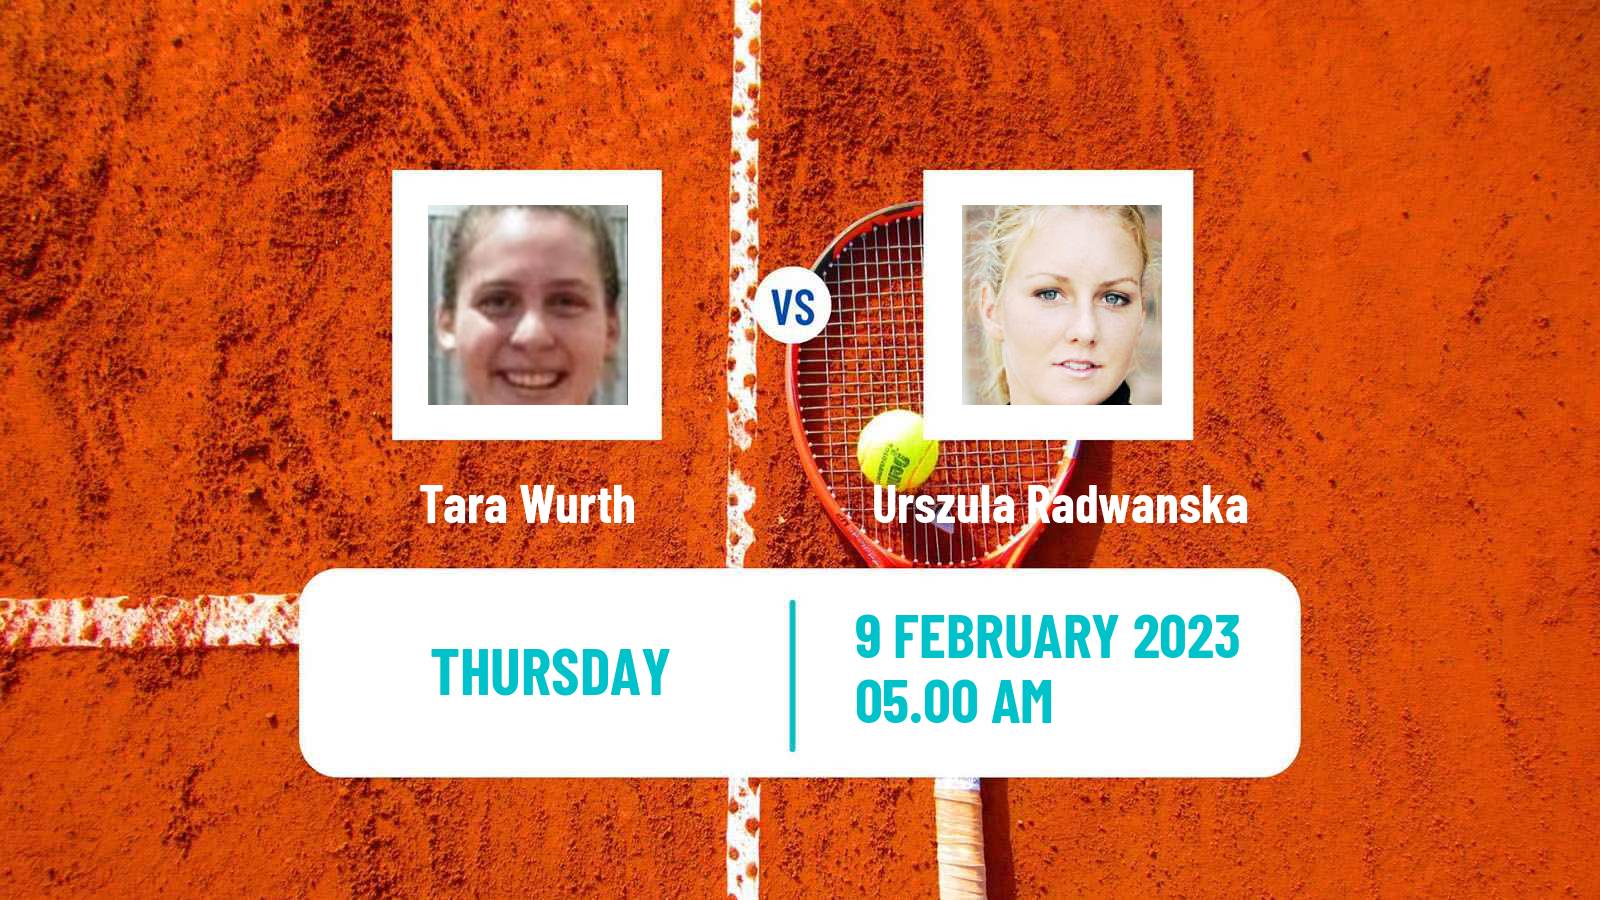 Tennis ITF Tournaments Tara Wurth - Urszula Radwanska